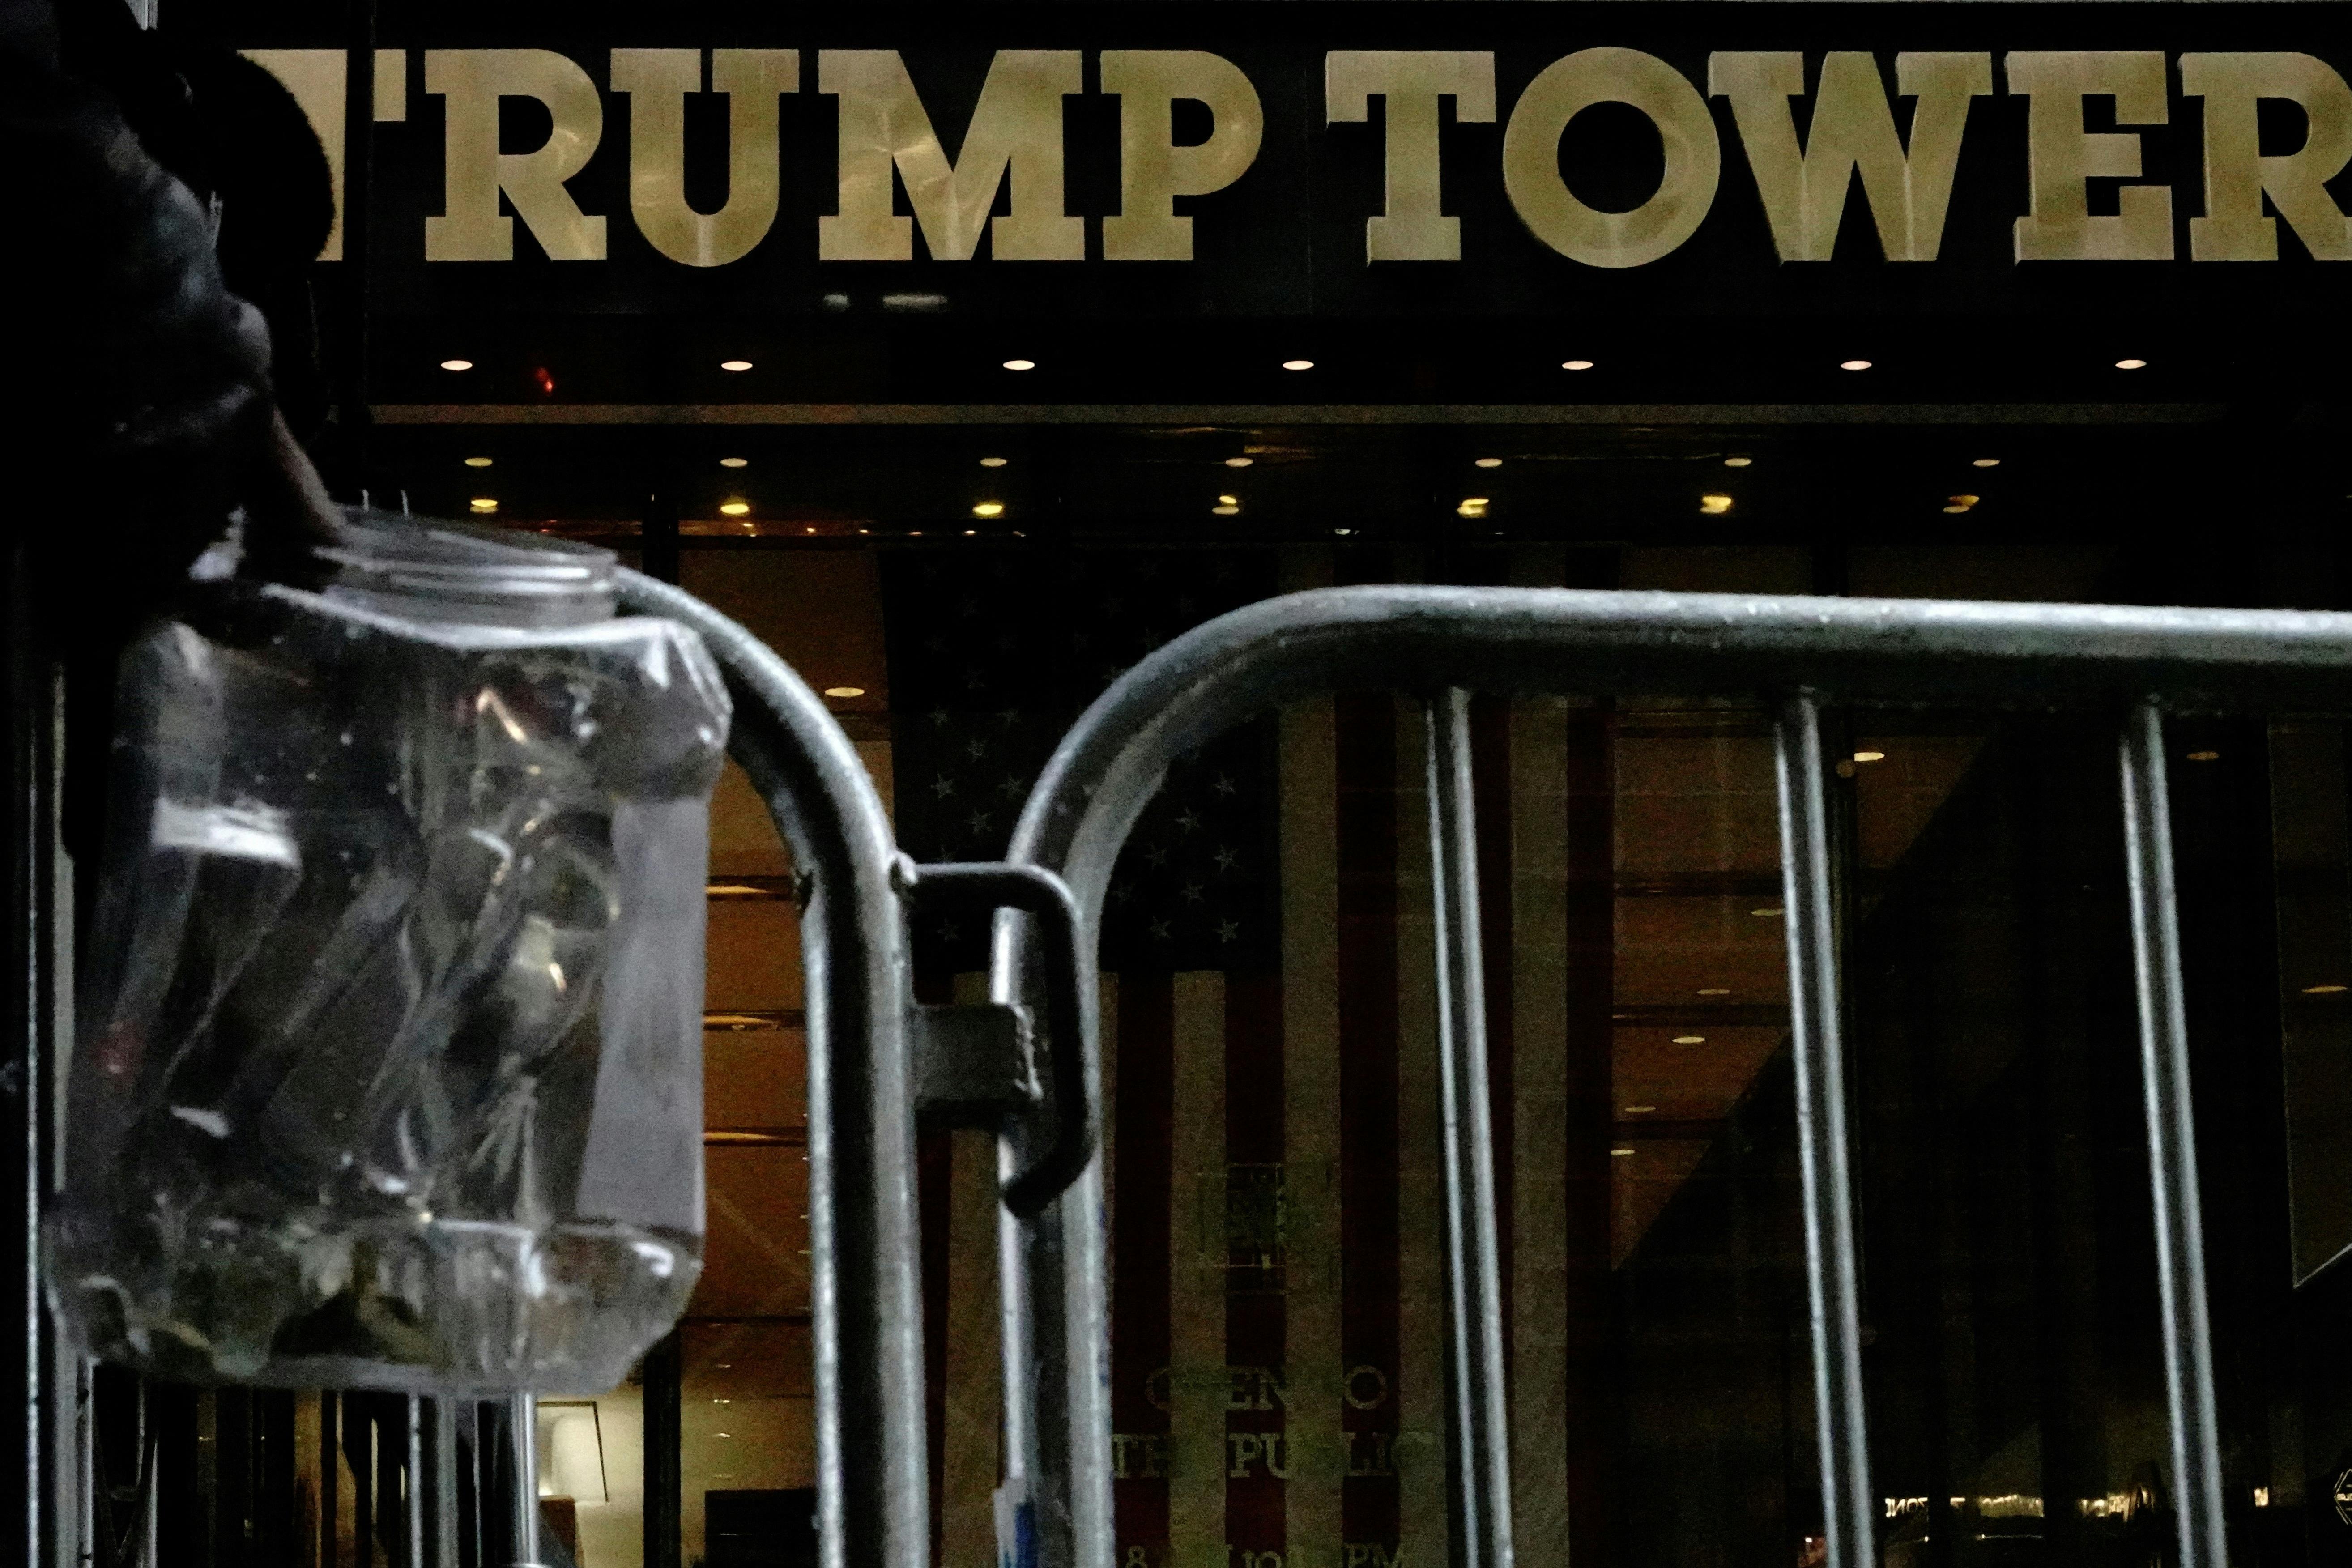 Politiet i New York forbereder sig på mulige demonstrationer i forbindelse med Donald Trumps overgivelse, skriver nyhedsbureauet Reuters.